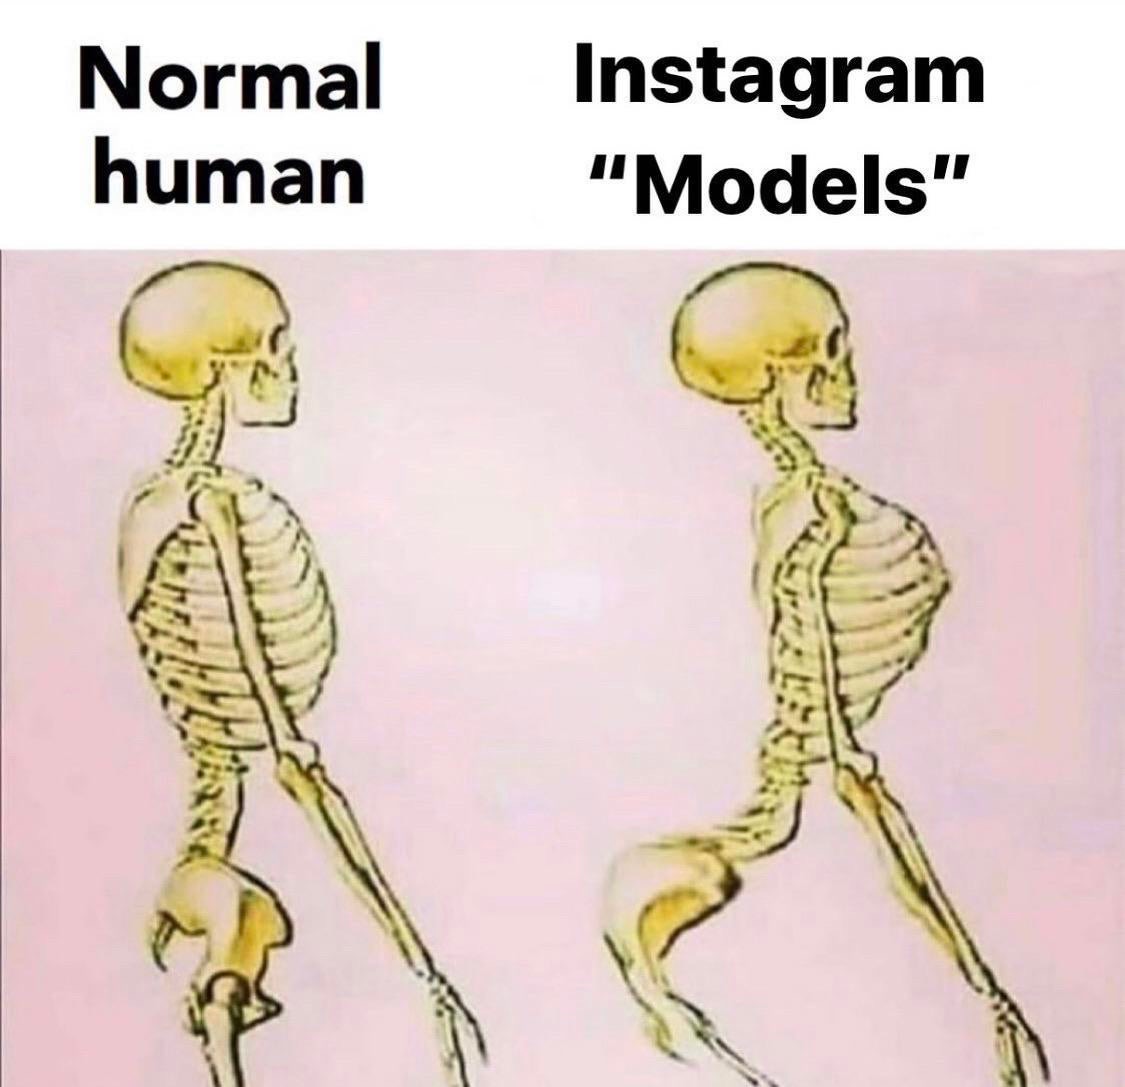 raheem sterling skeleton - Normal human Instagram "Models"